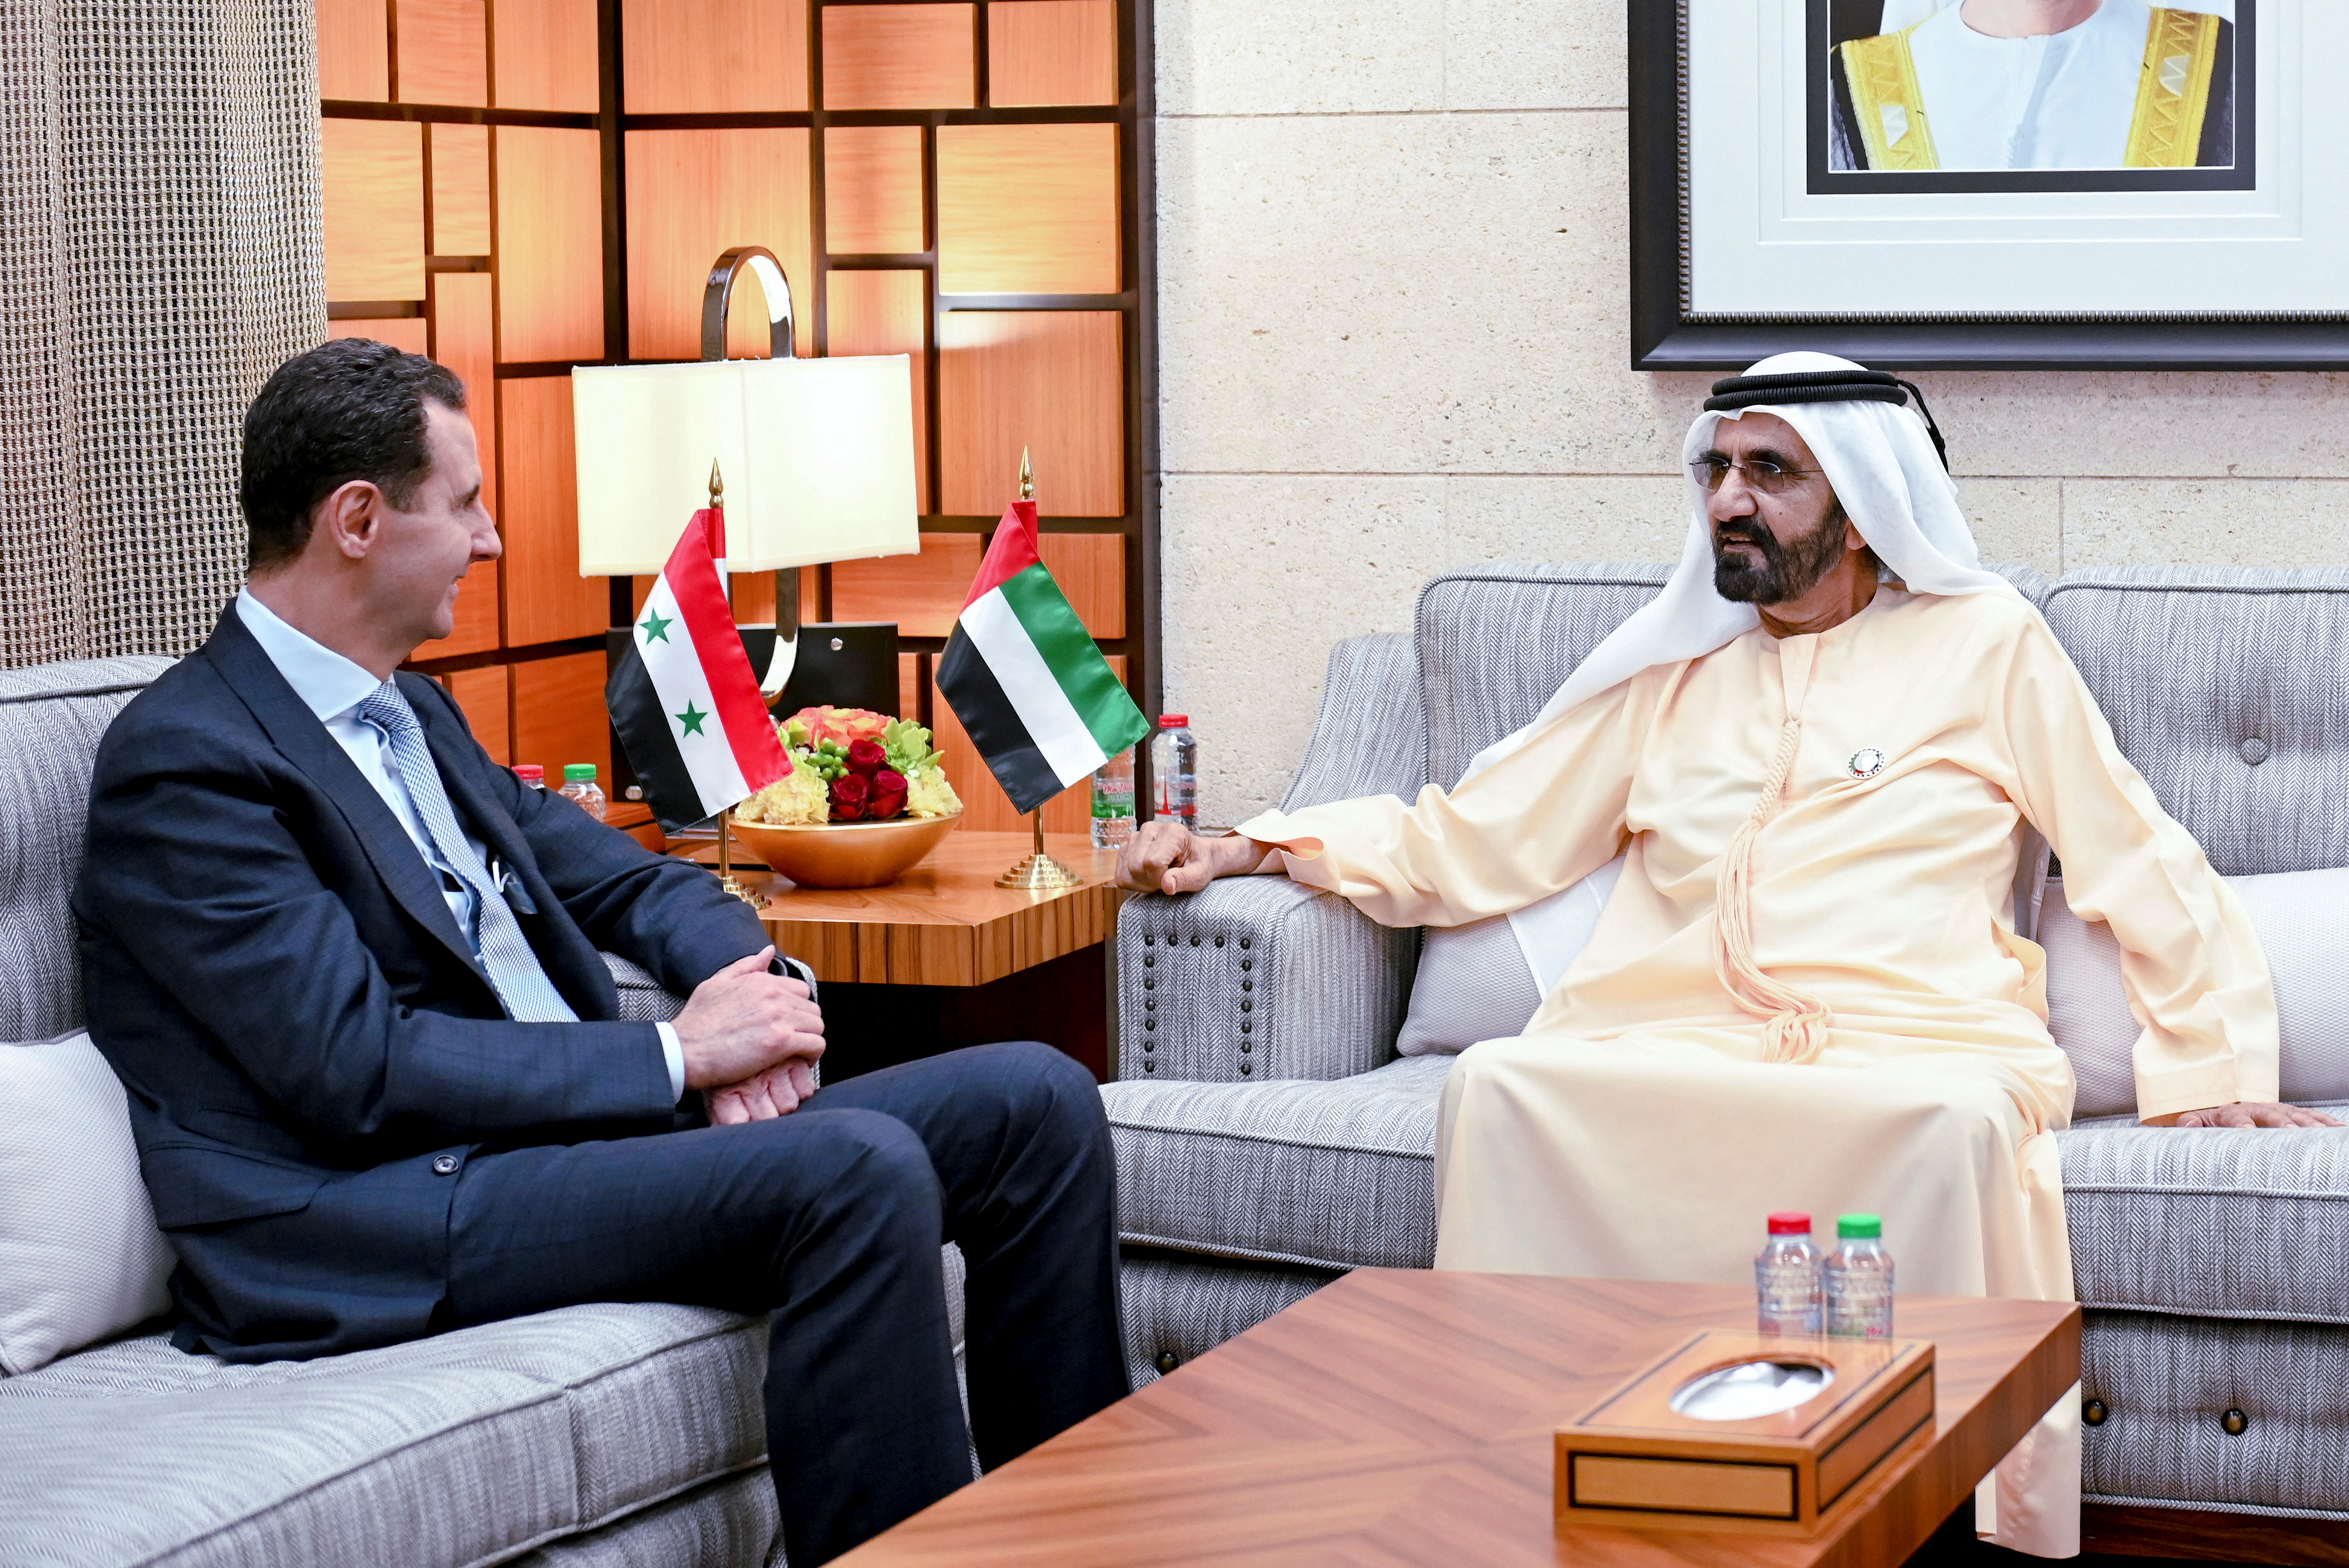 El dictador sirio Bashar al Assad visitó Emiratos Árabes Unidos en su primer viaje desde el año 2011